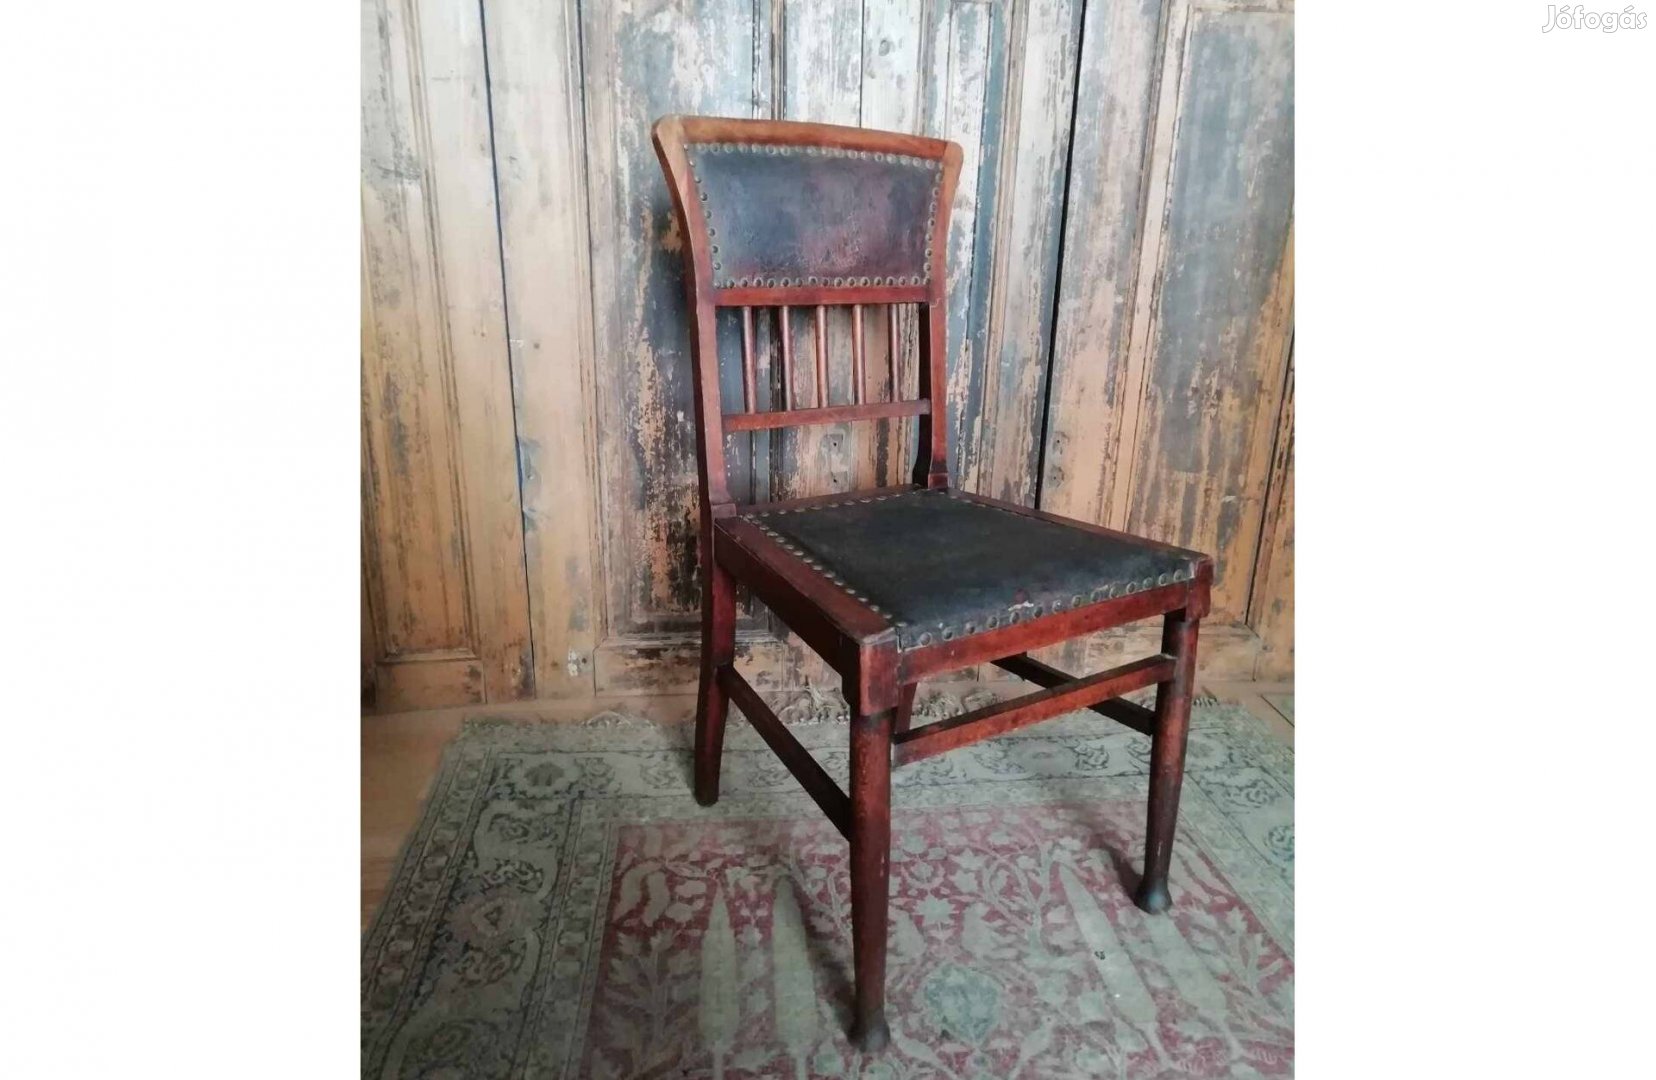 Bőr szék, antik bőrkárpitos szék, tisztítva, kezelve keményfa szék